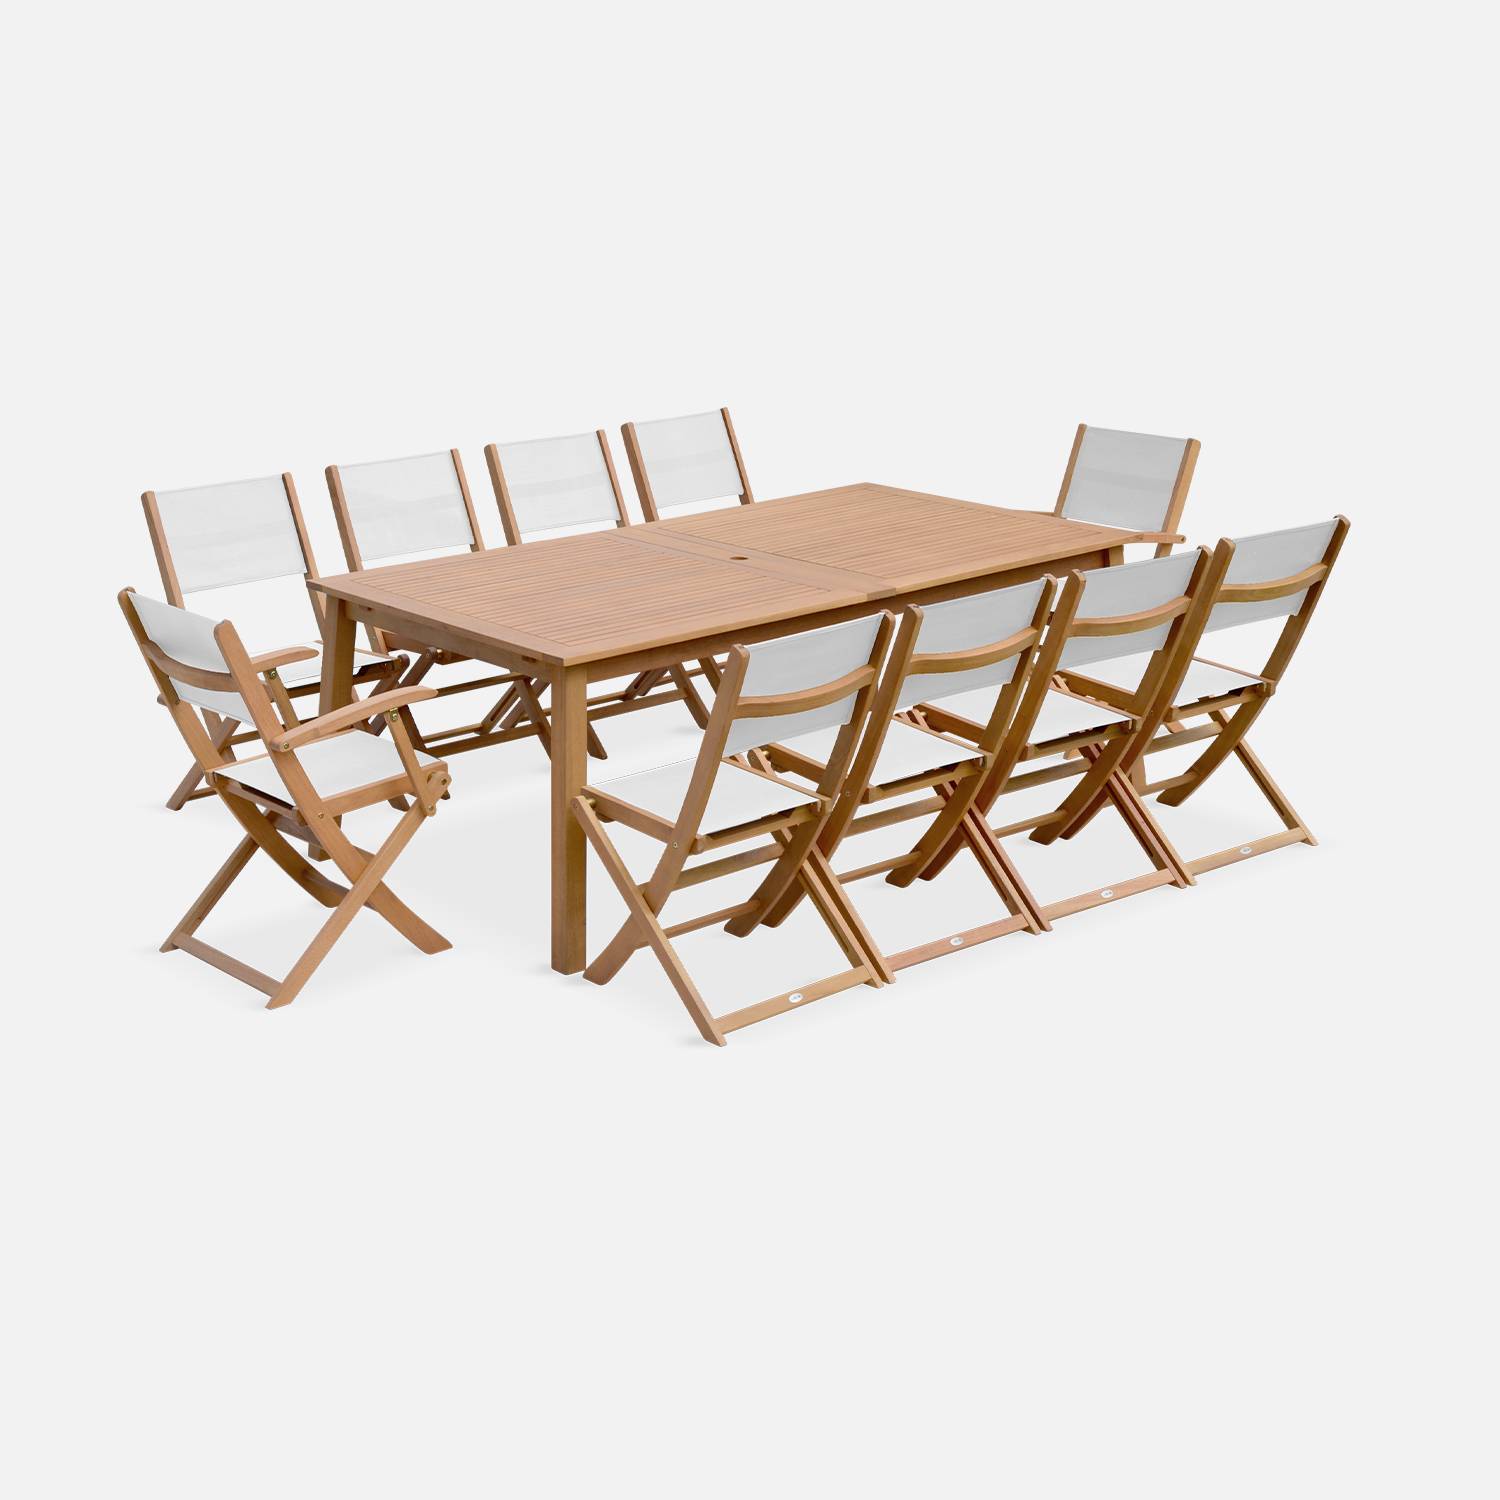 Ausziehbare Gartenmöbel aus Holz - Almeria Tisch 200/250/300cm mit 2 Verlängerungen, 2 Sesseln und 8 Stühlen, aus geöltem FSC Eukalyptusholz und weißem Textilene Photo3